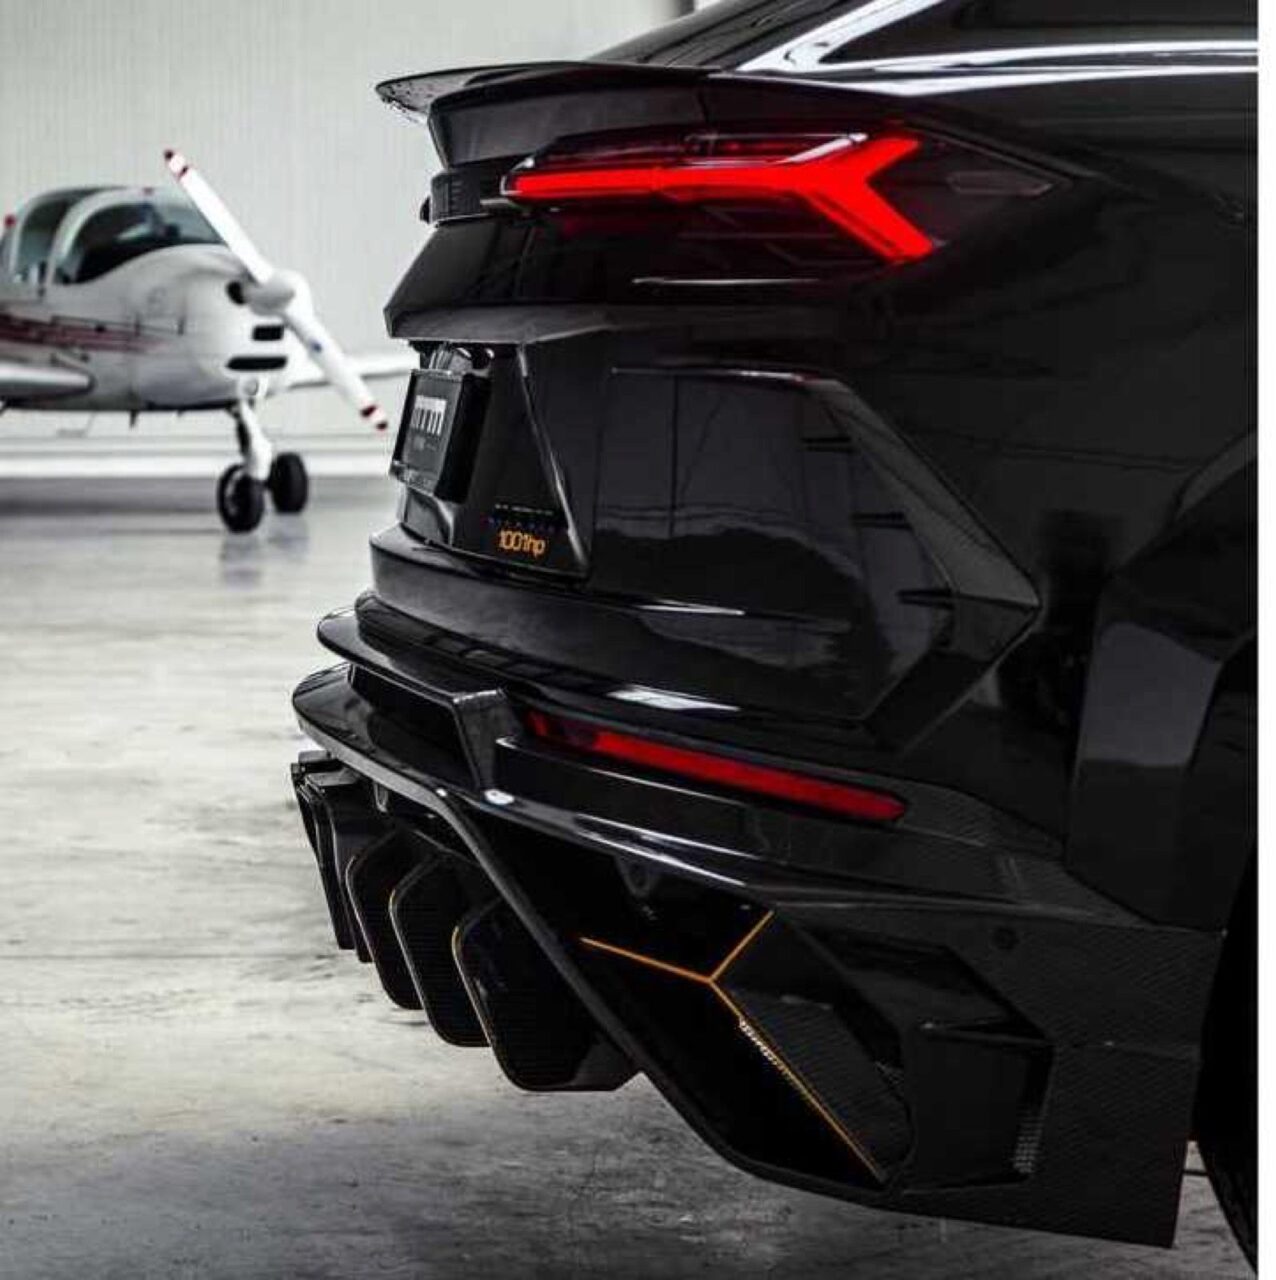 Dubbel aangepakte Lamborghini 